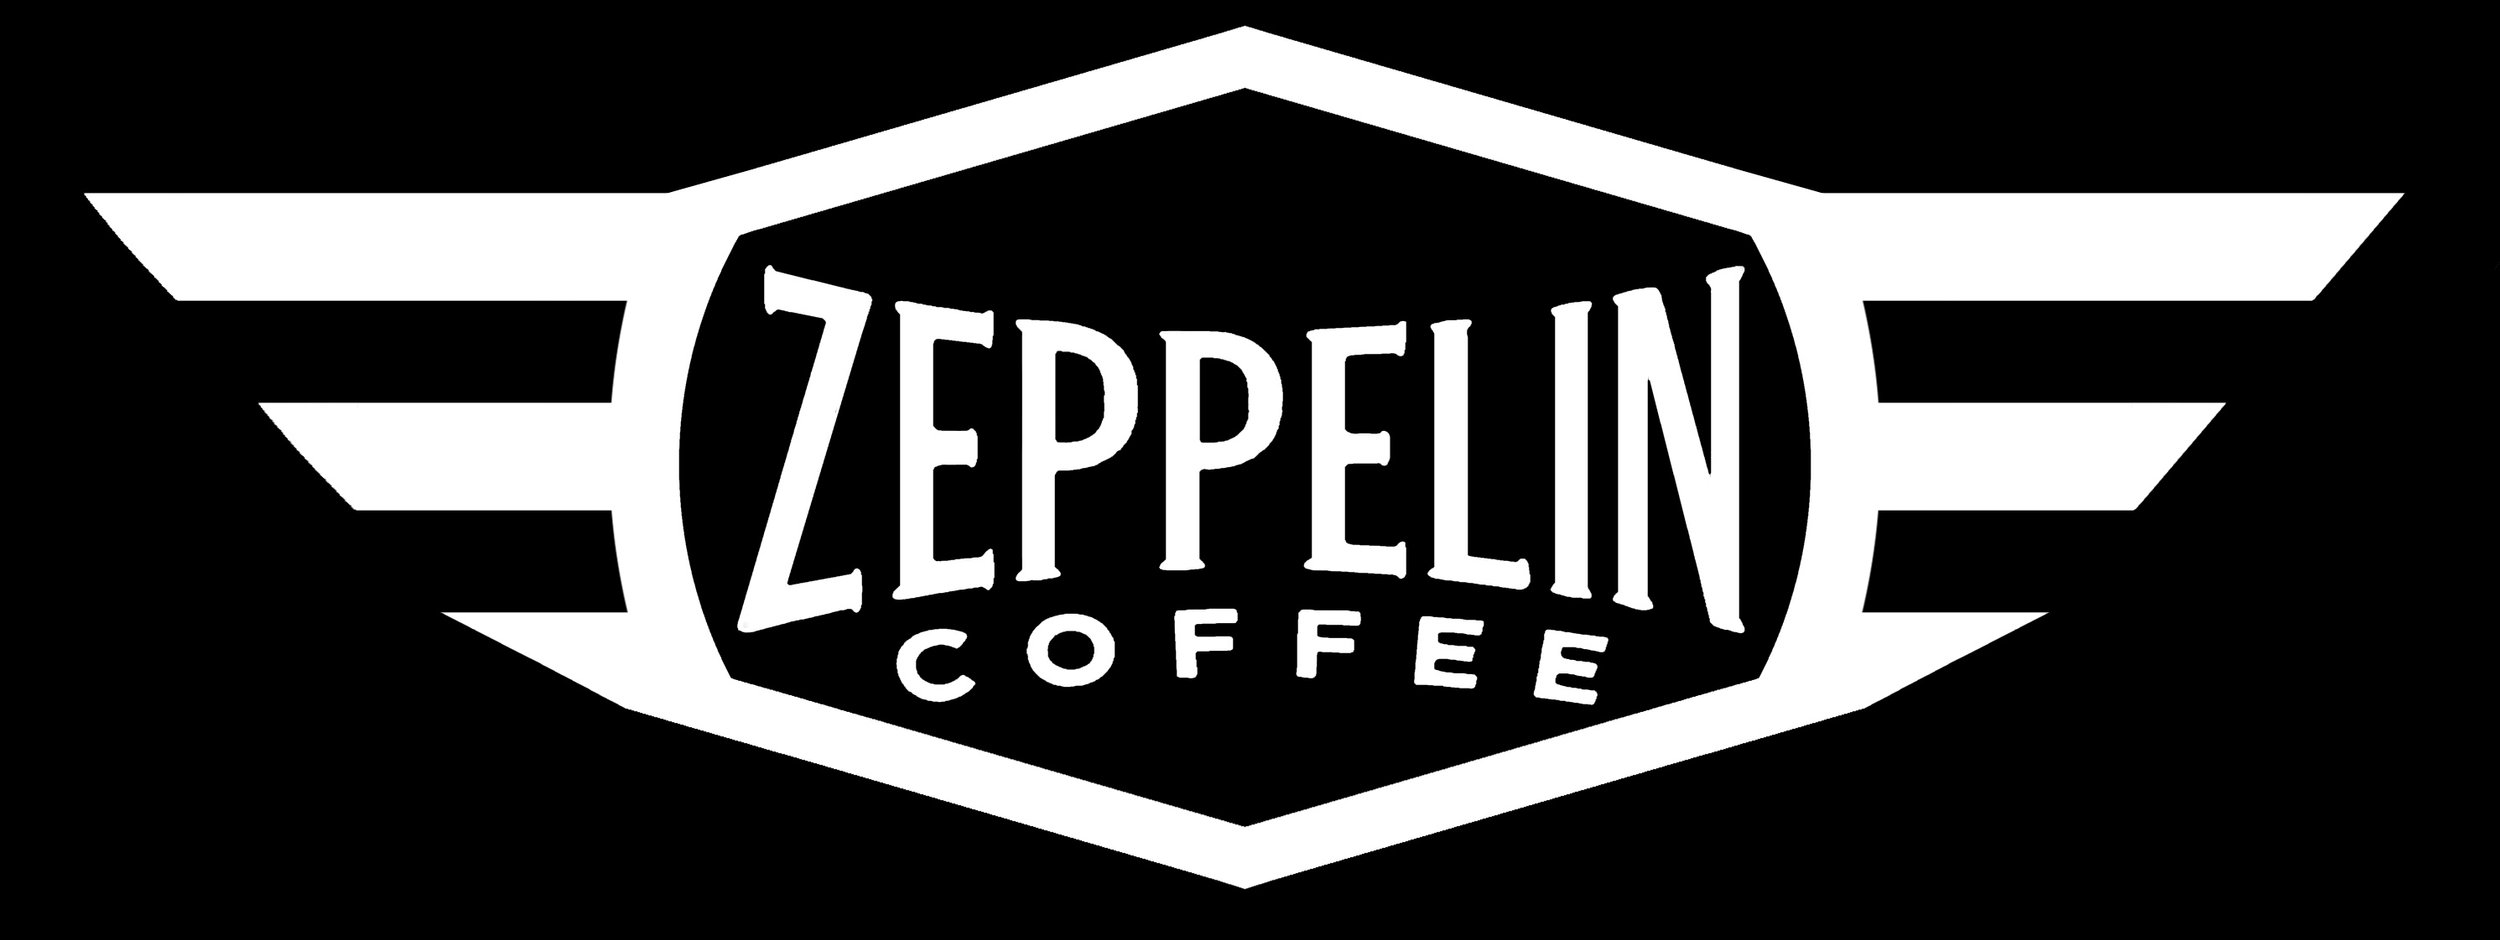 Zeppelin Coffee Company